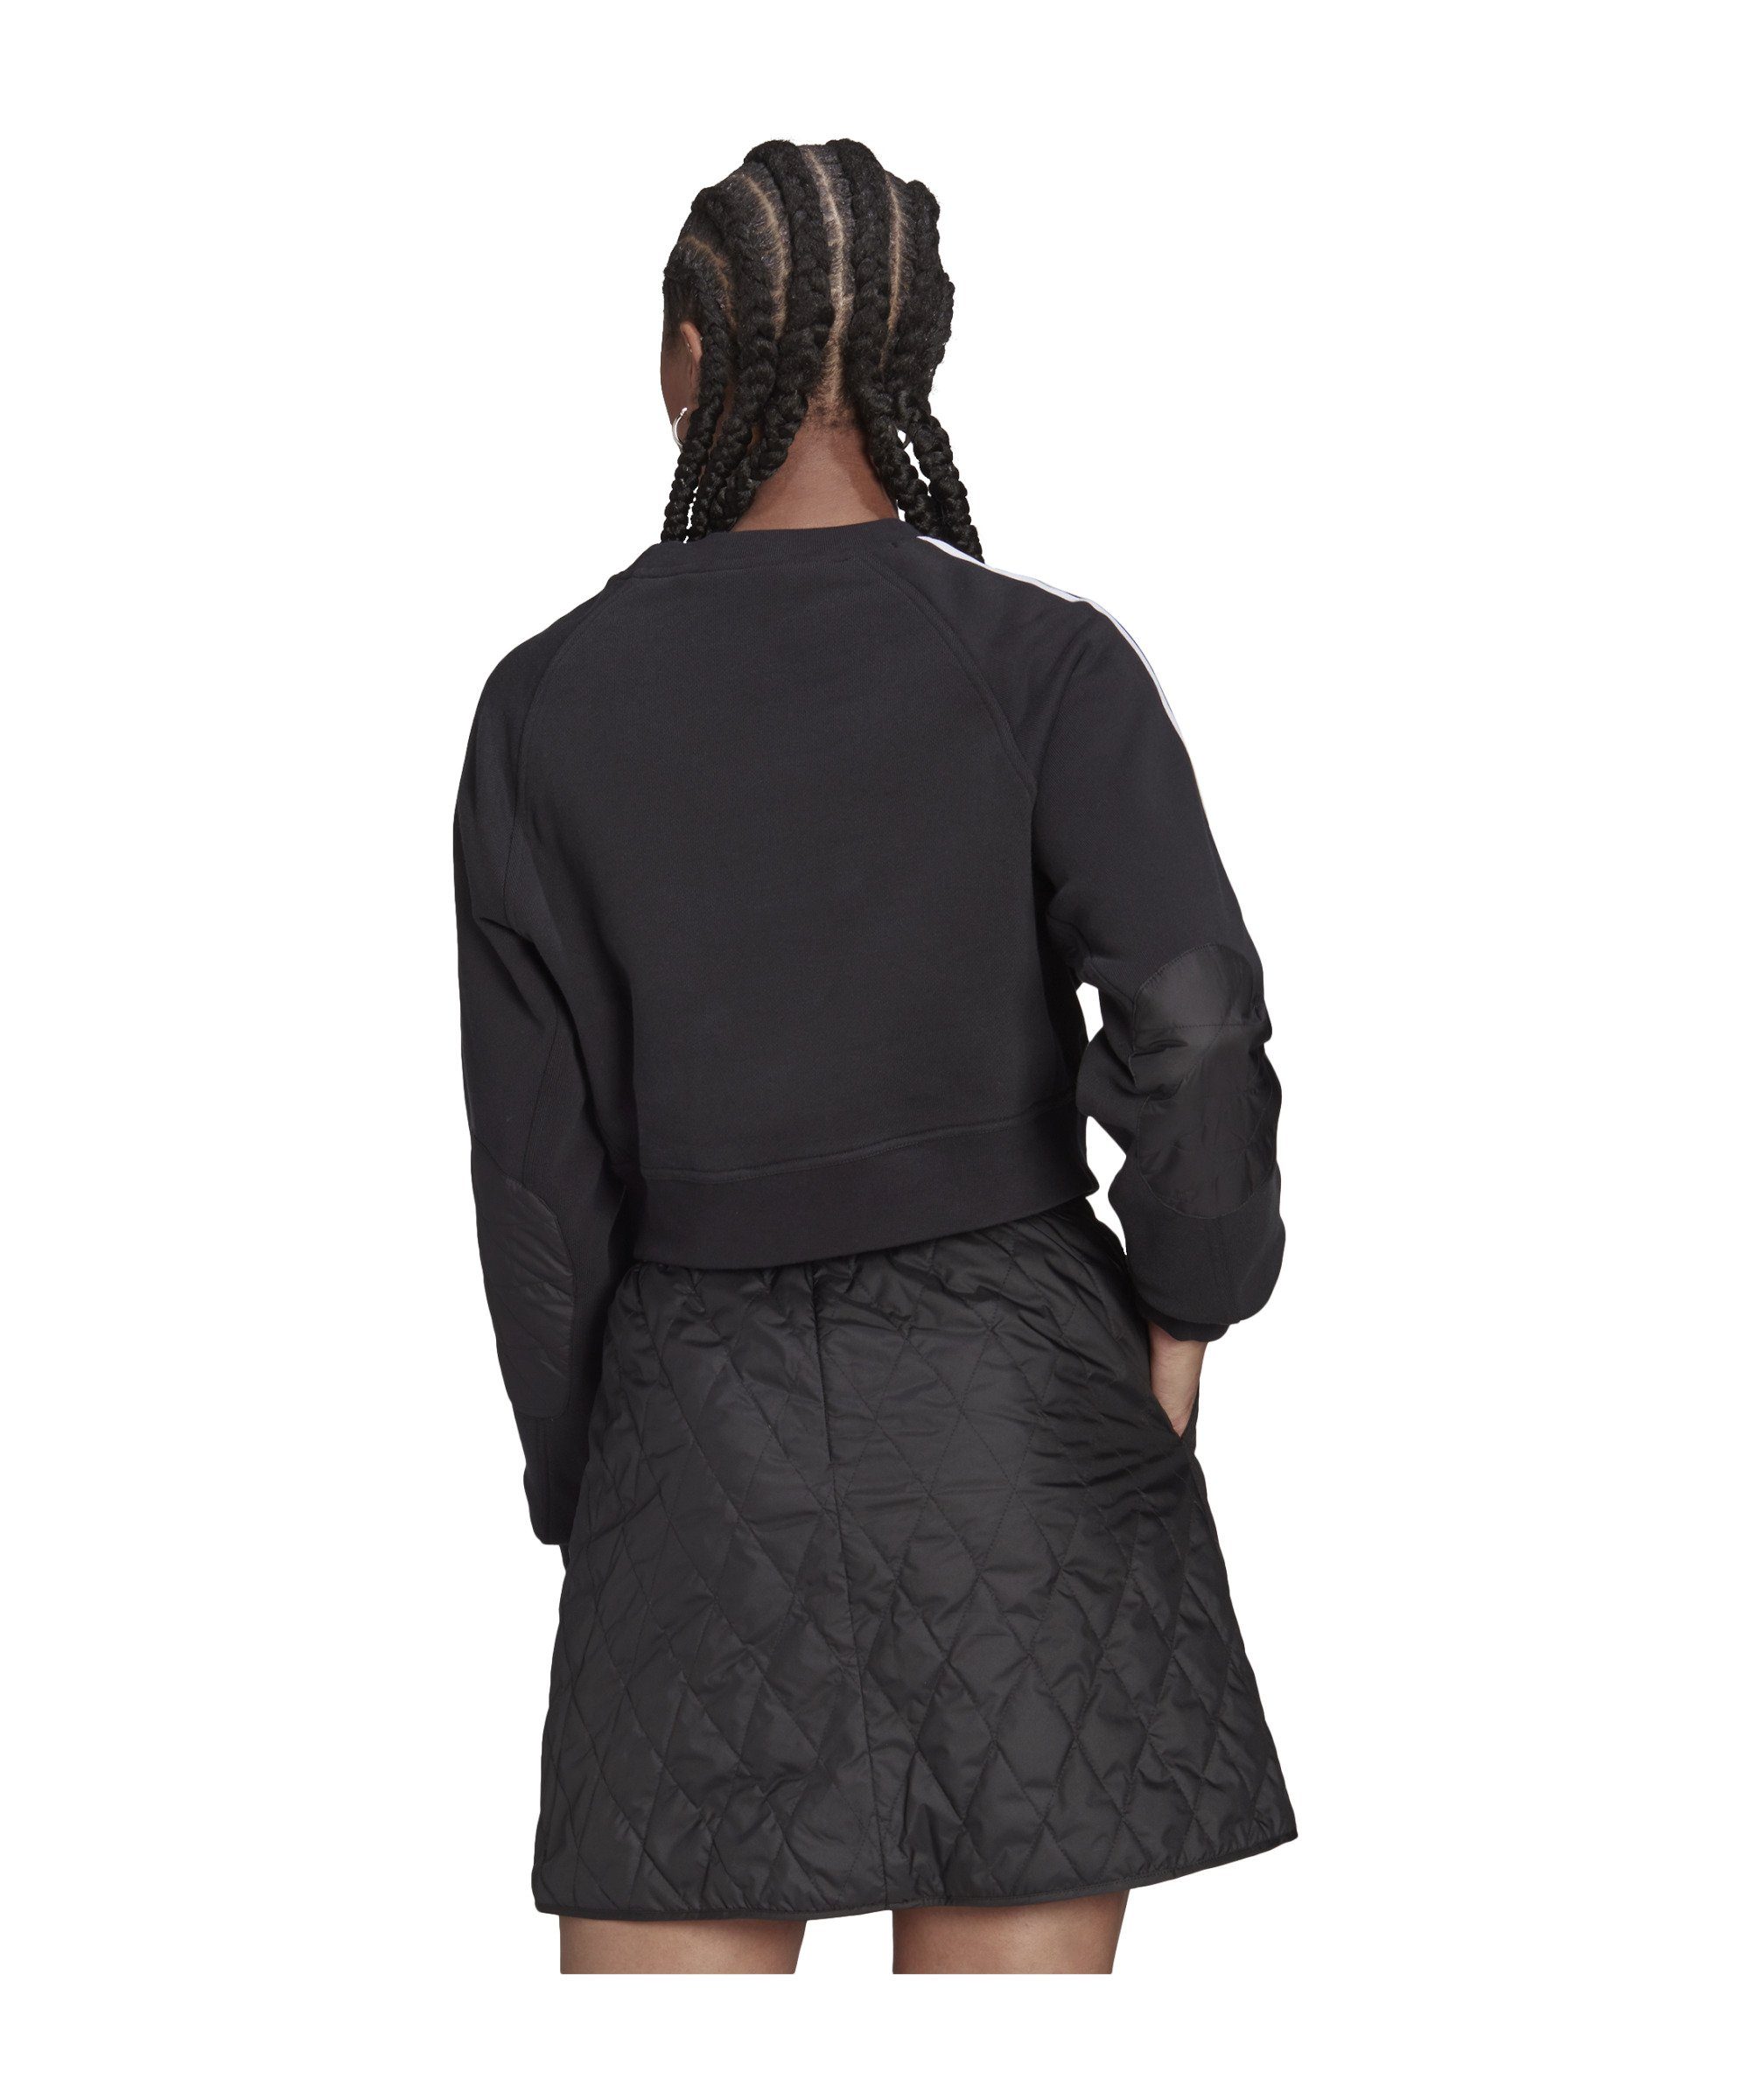 adidas Originals Sweater Sweatshirt Damen schwarz